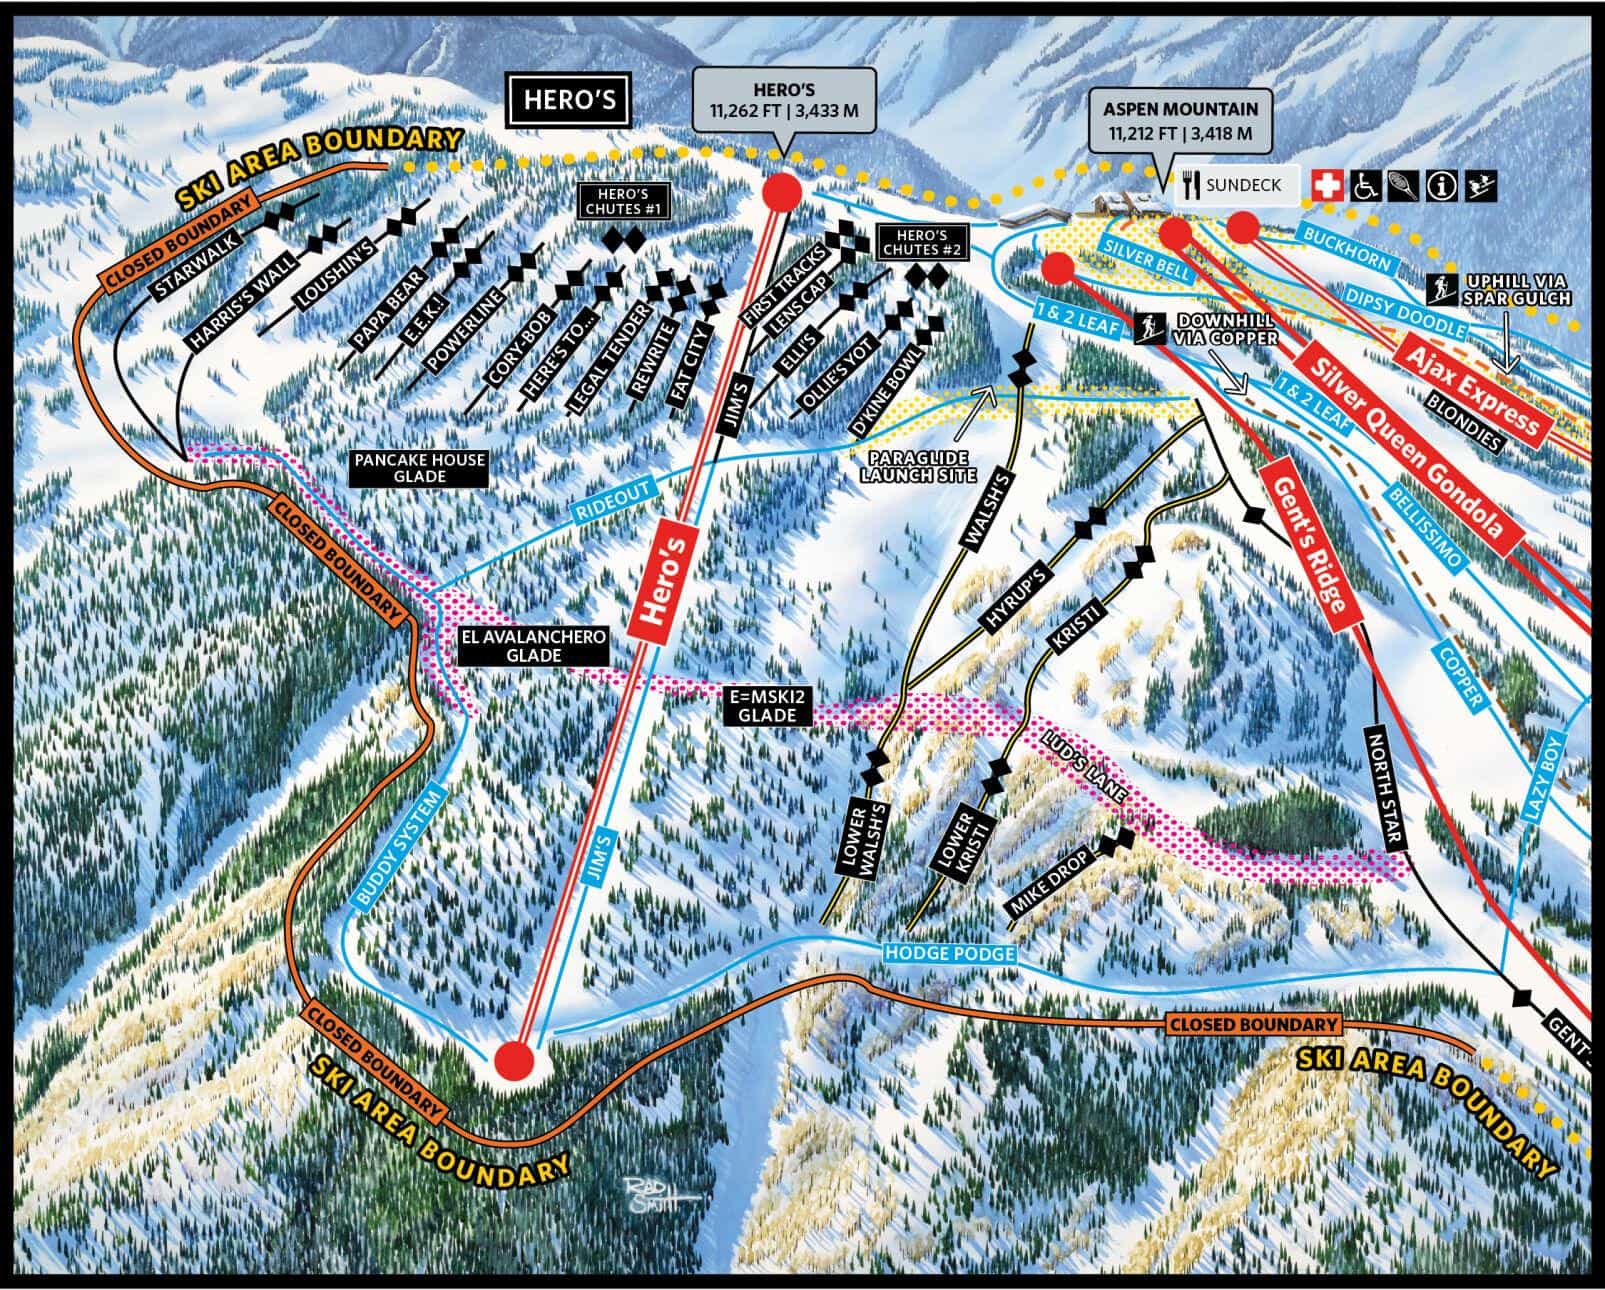 Champion, Aspen Snowmass, Aspen Mountain, Colorado, Pandora